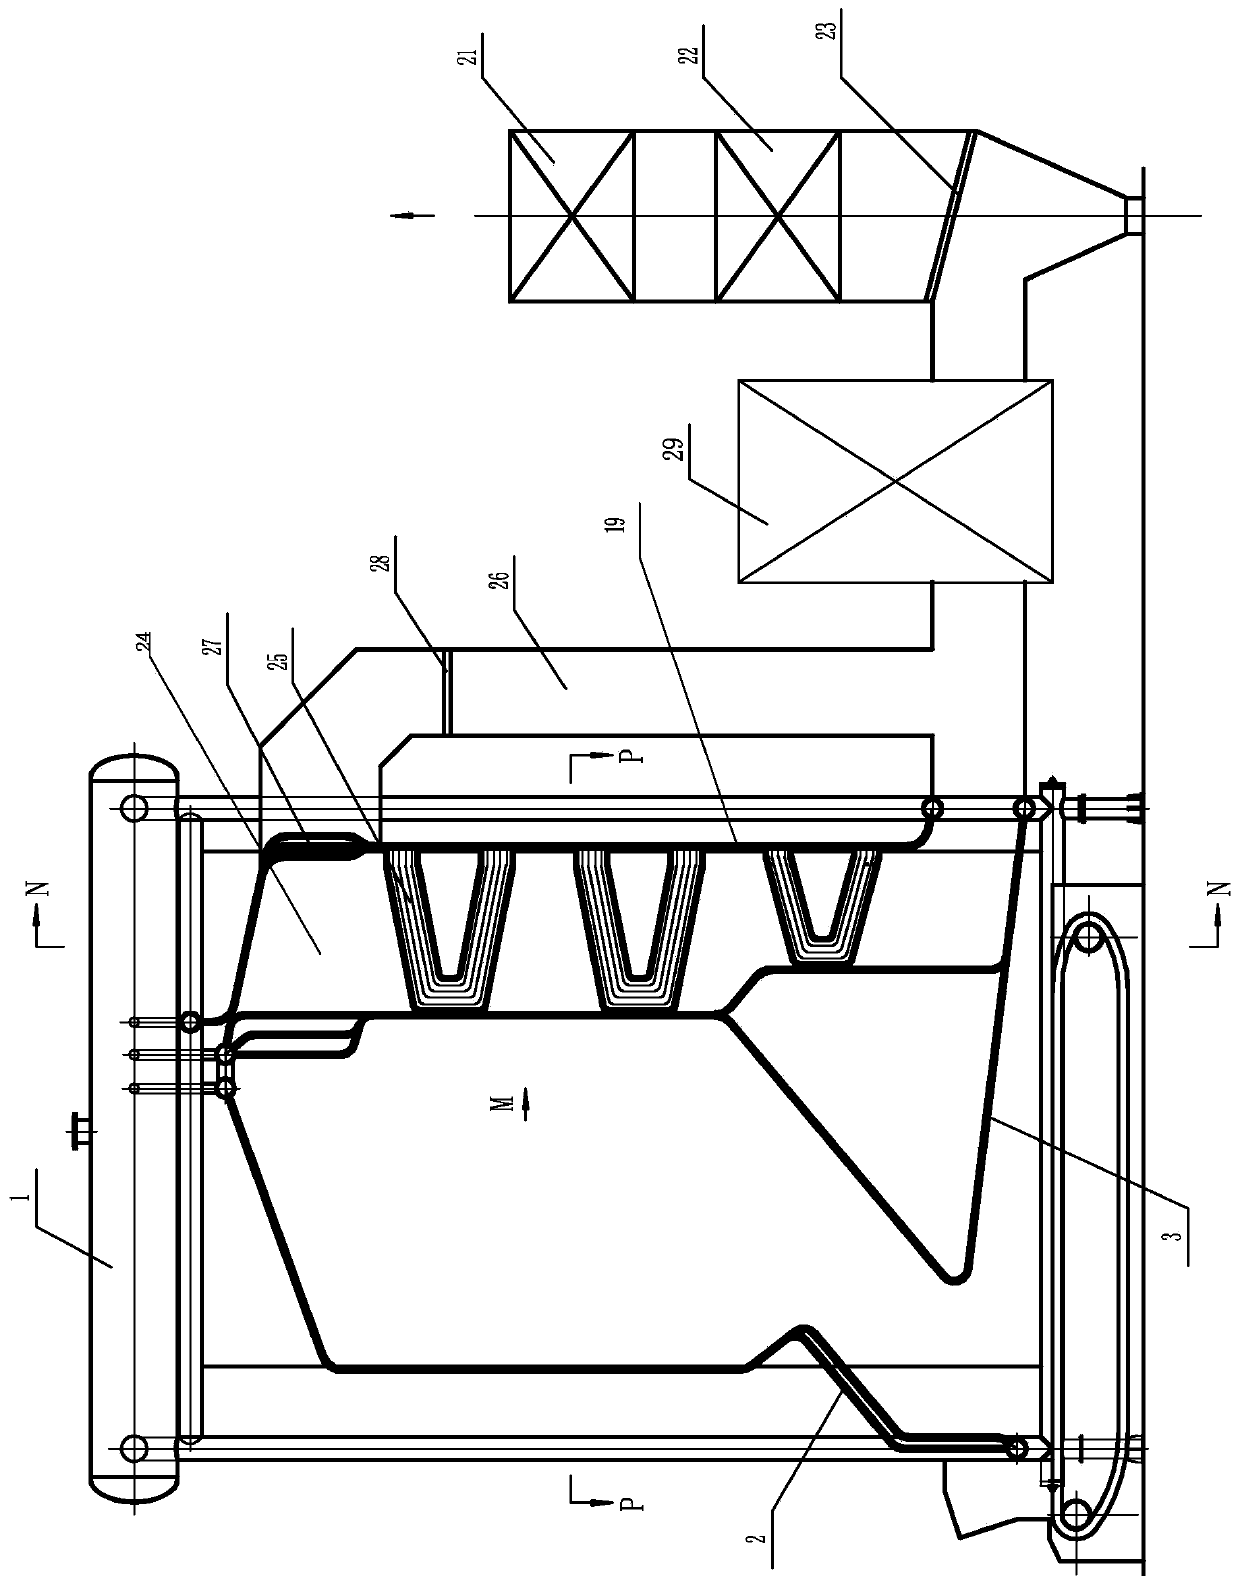 Large-capacity longitudinal corner tube boiler